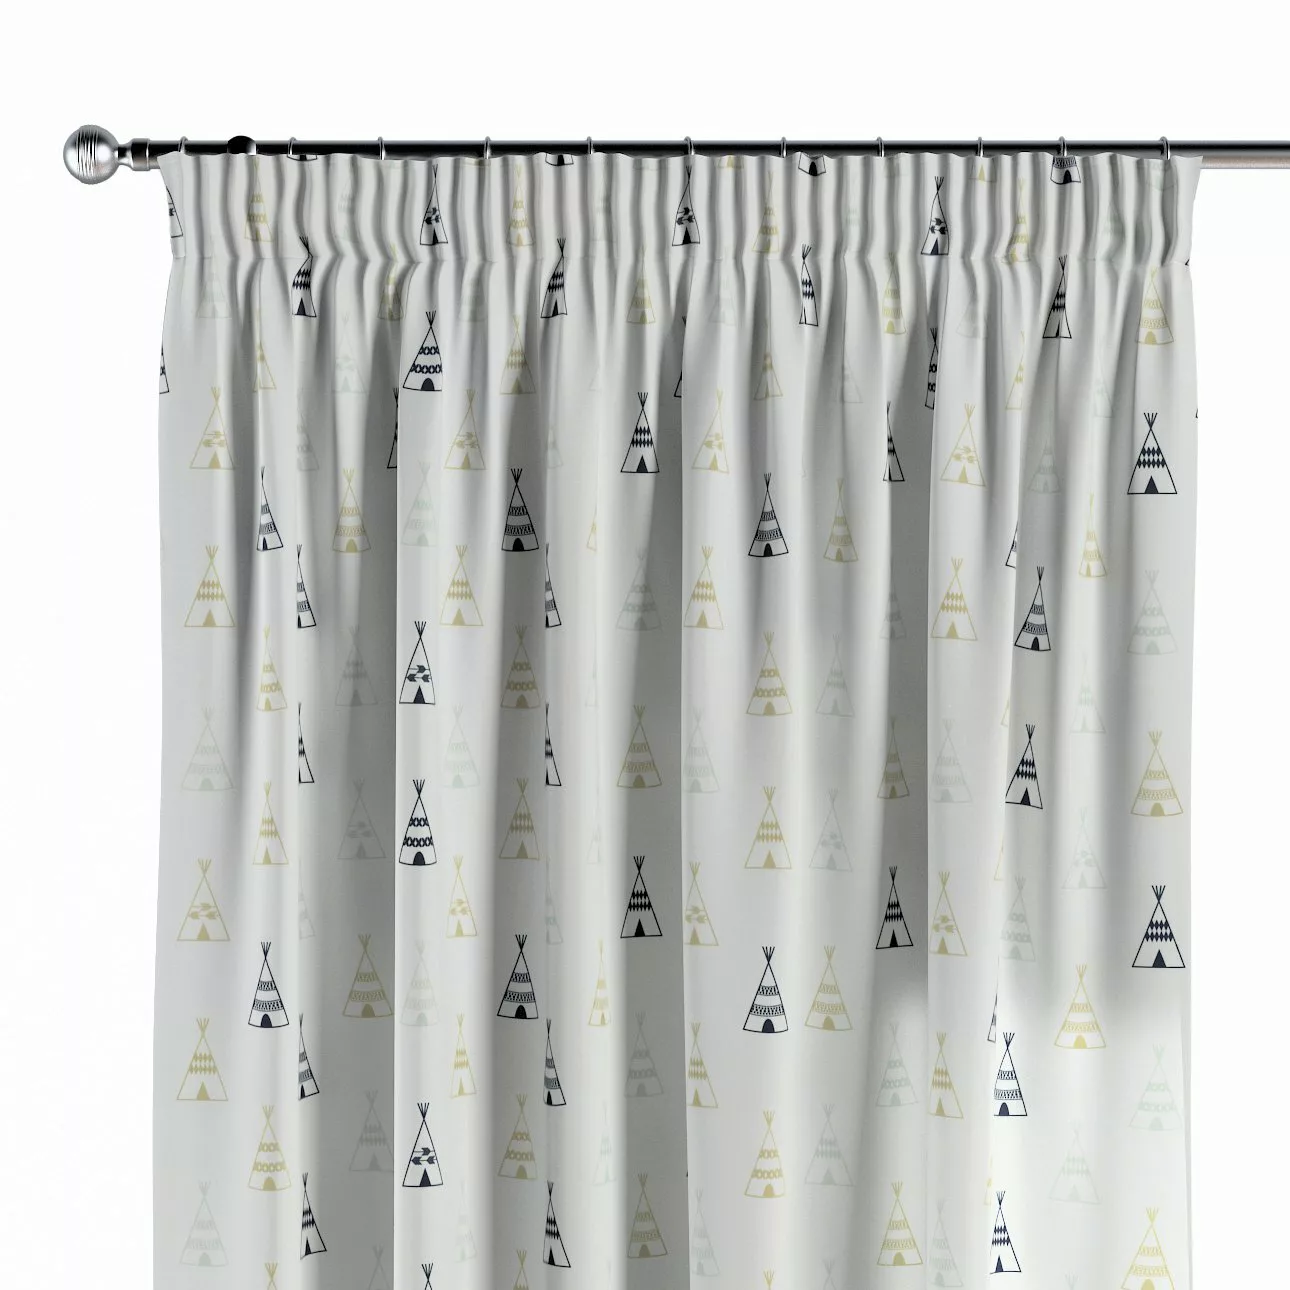 Vorhang mit Kräuselband, weiß-schwarz-grau, SALE (141-84) günstig online kaufen